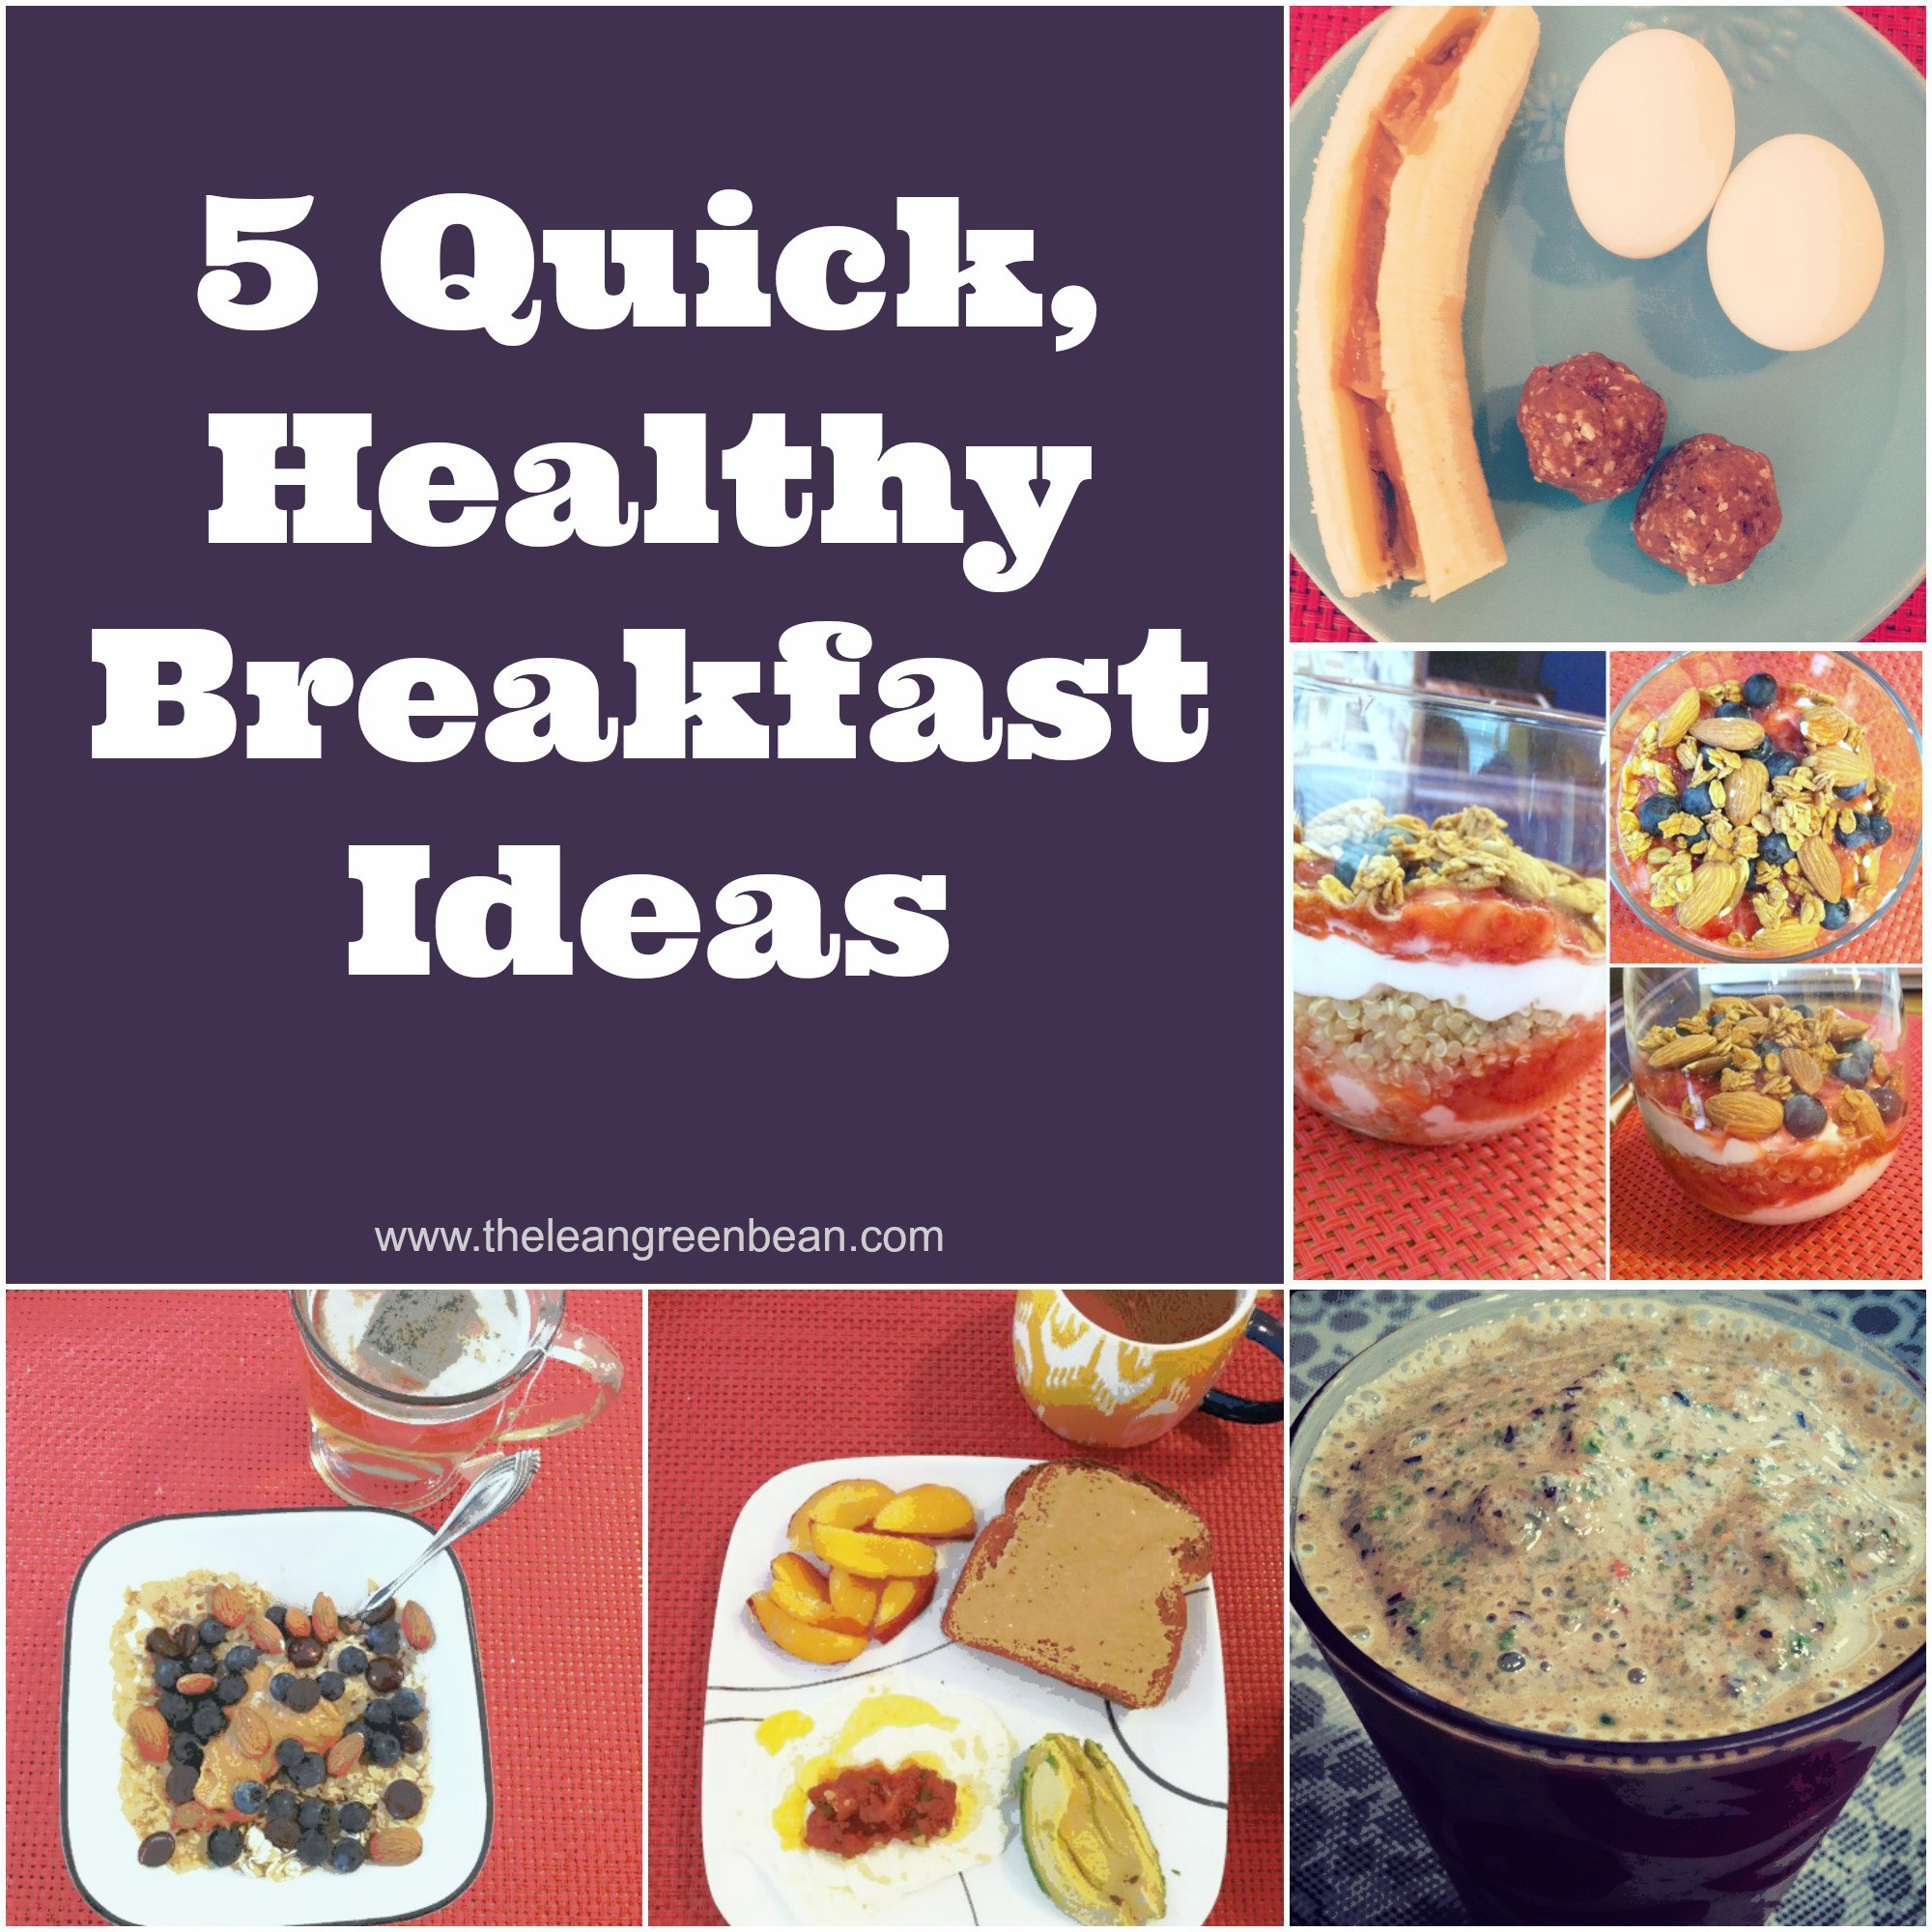 Healthy Easy Breakfast Ideas
 5 Quick Healthy Breakfast Ideas from a Registered Dietitian